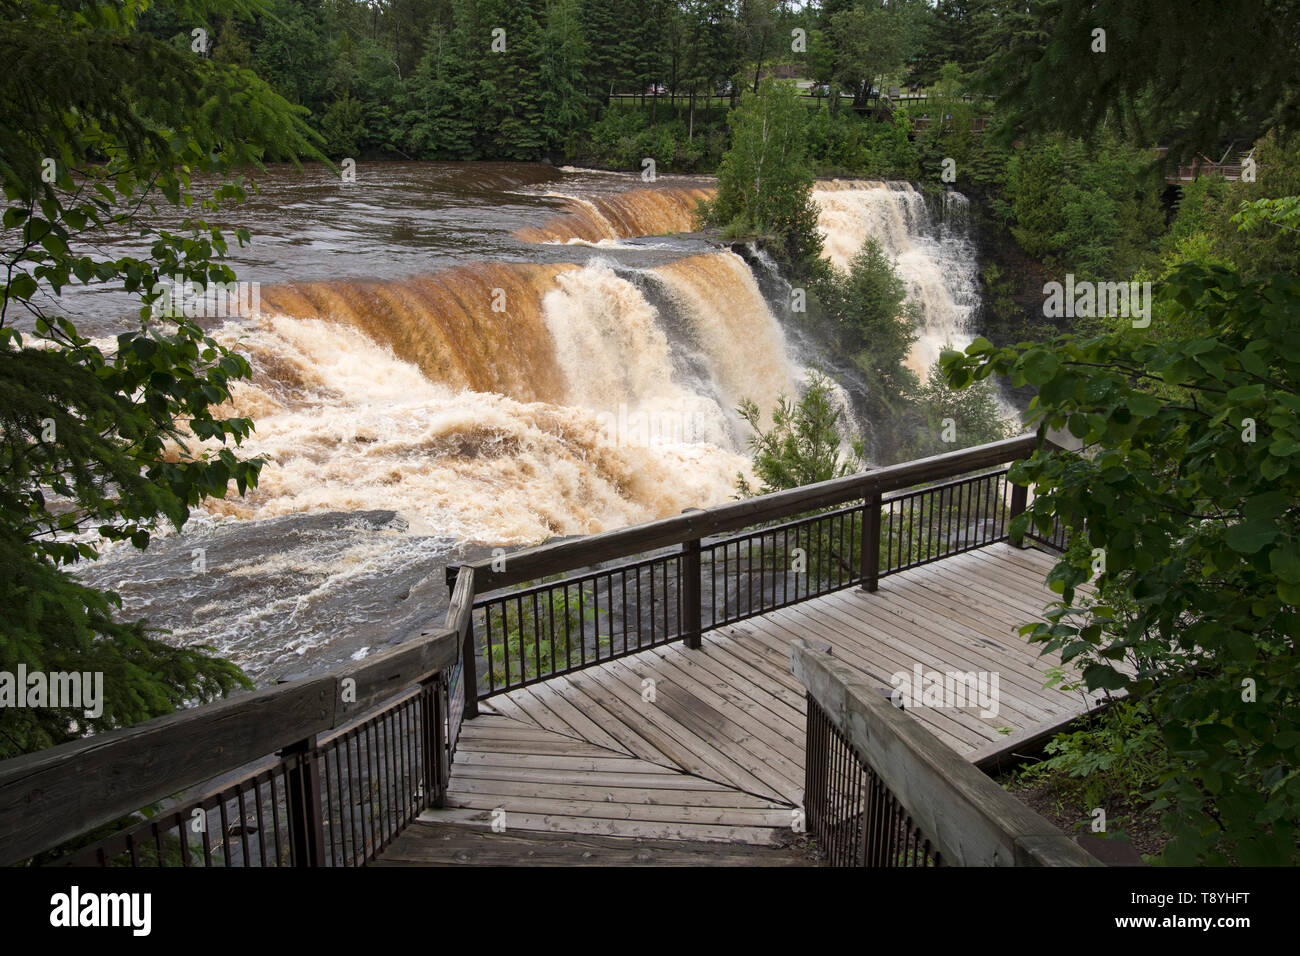 Kakabeka Falls è una cascata sul fiume Kaministiquia, a ovest della città di Thunder Bay, Ontario. A causa delle sue dimensioni e della facilità di accesso, è stato soprannominato 'il Niagara del nord". Foto Stock